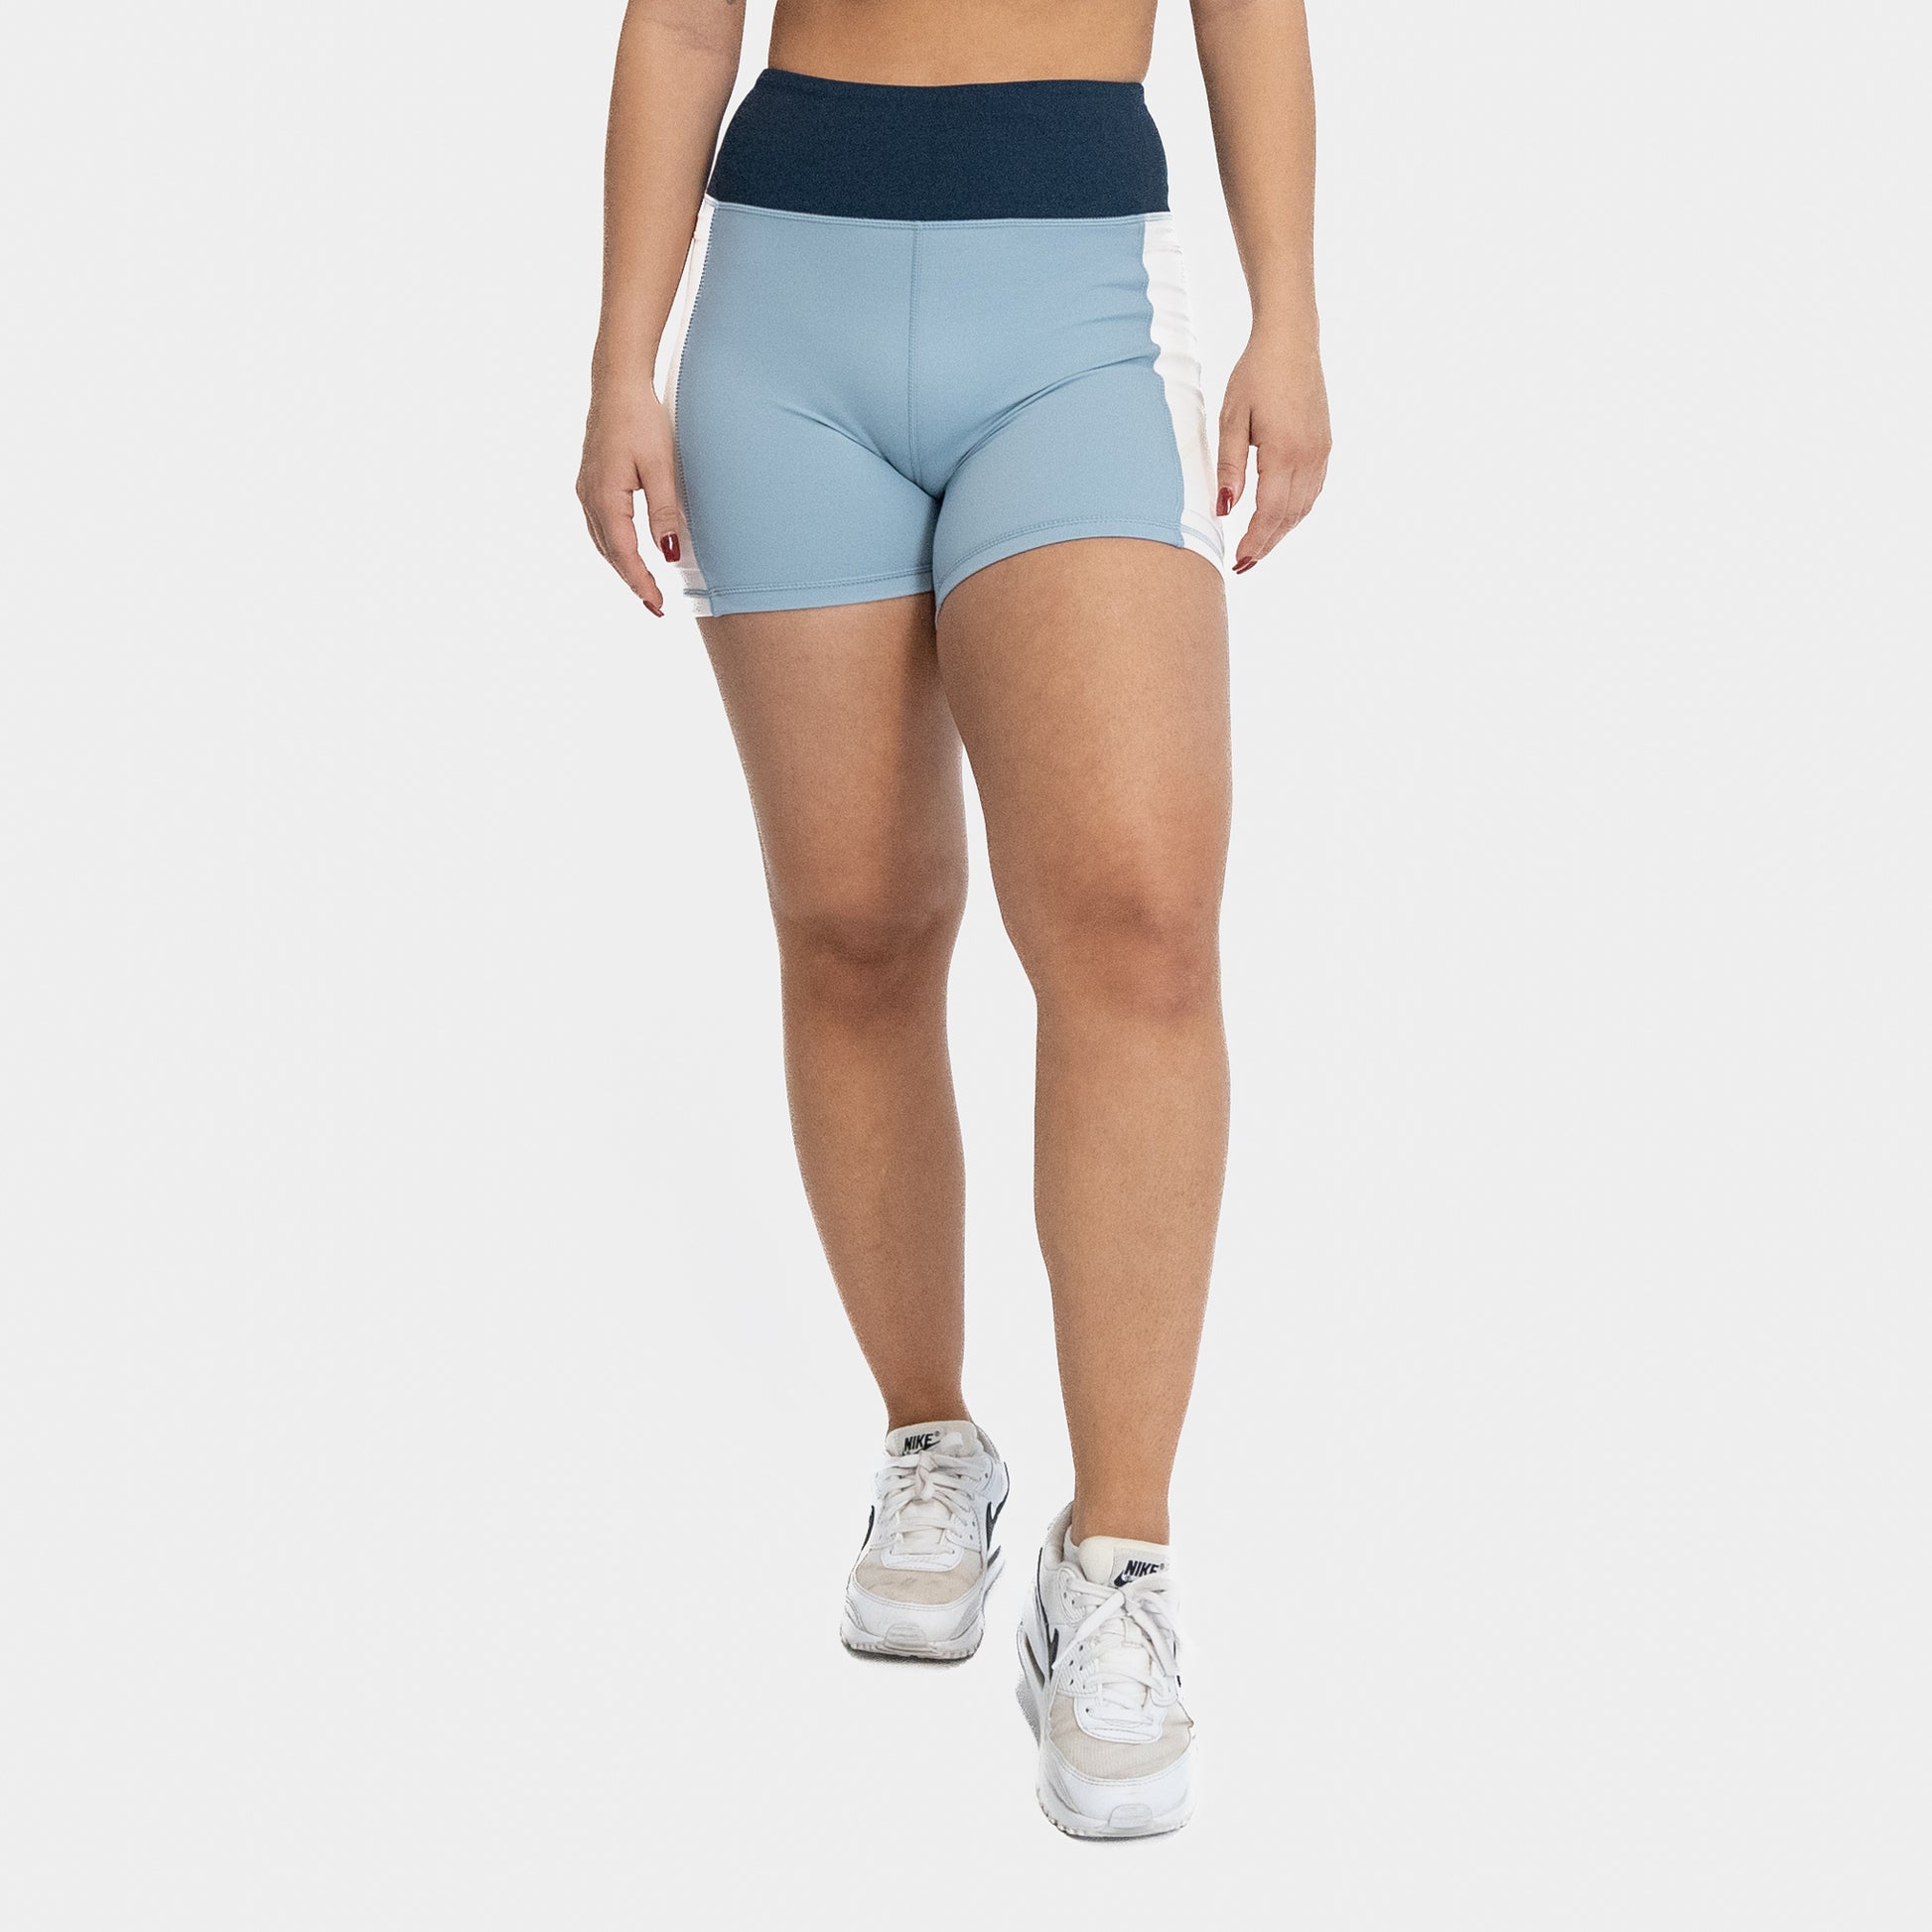 Lux Baseline Shorts (5 in. inseam) - Navy/Jet Stream/Steel Blue – Senita  Athletics